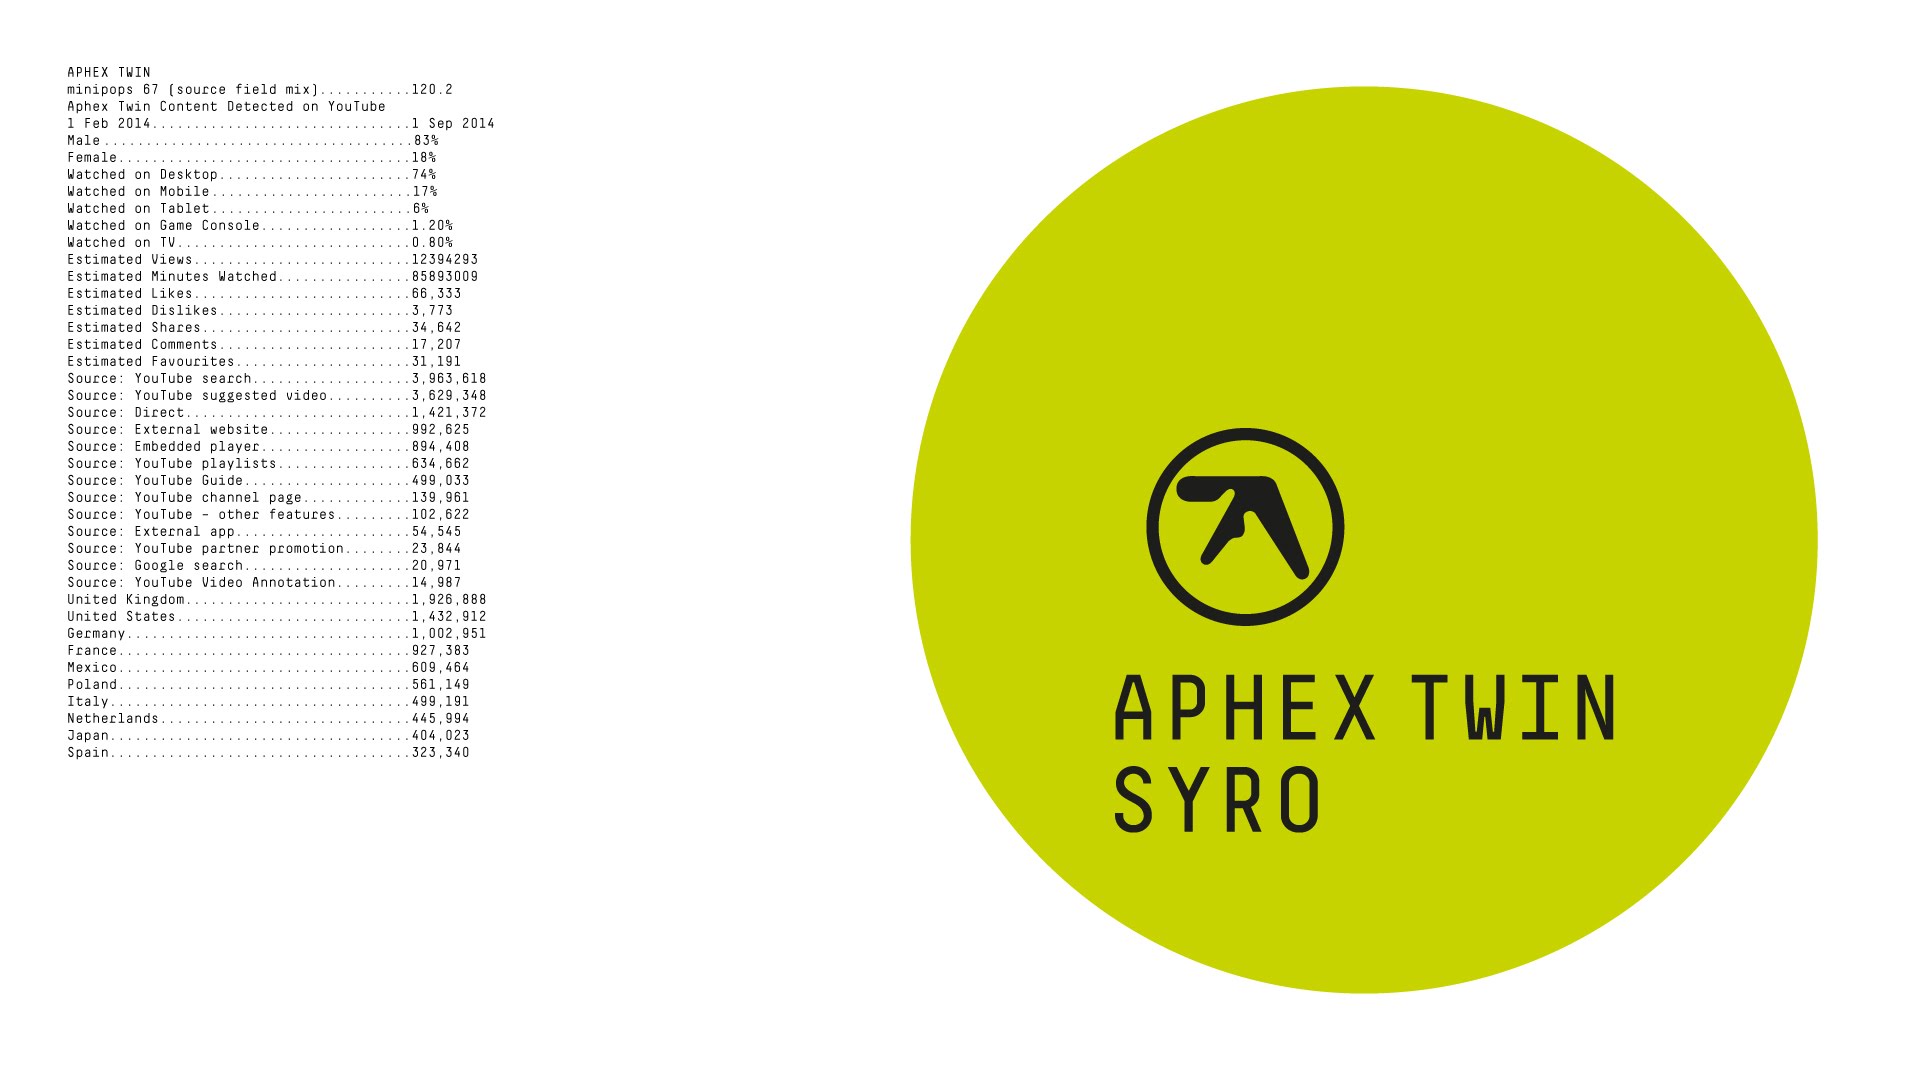 Aphex Twin y su nuevo single, minipops 67 [120.2][source field mix]